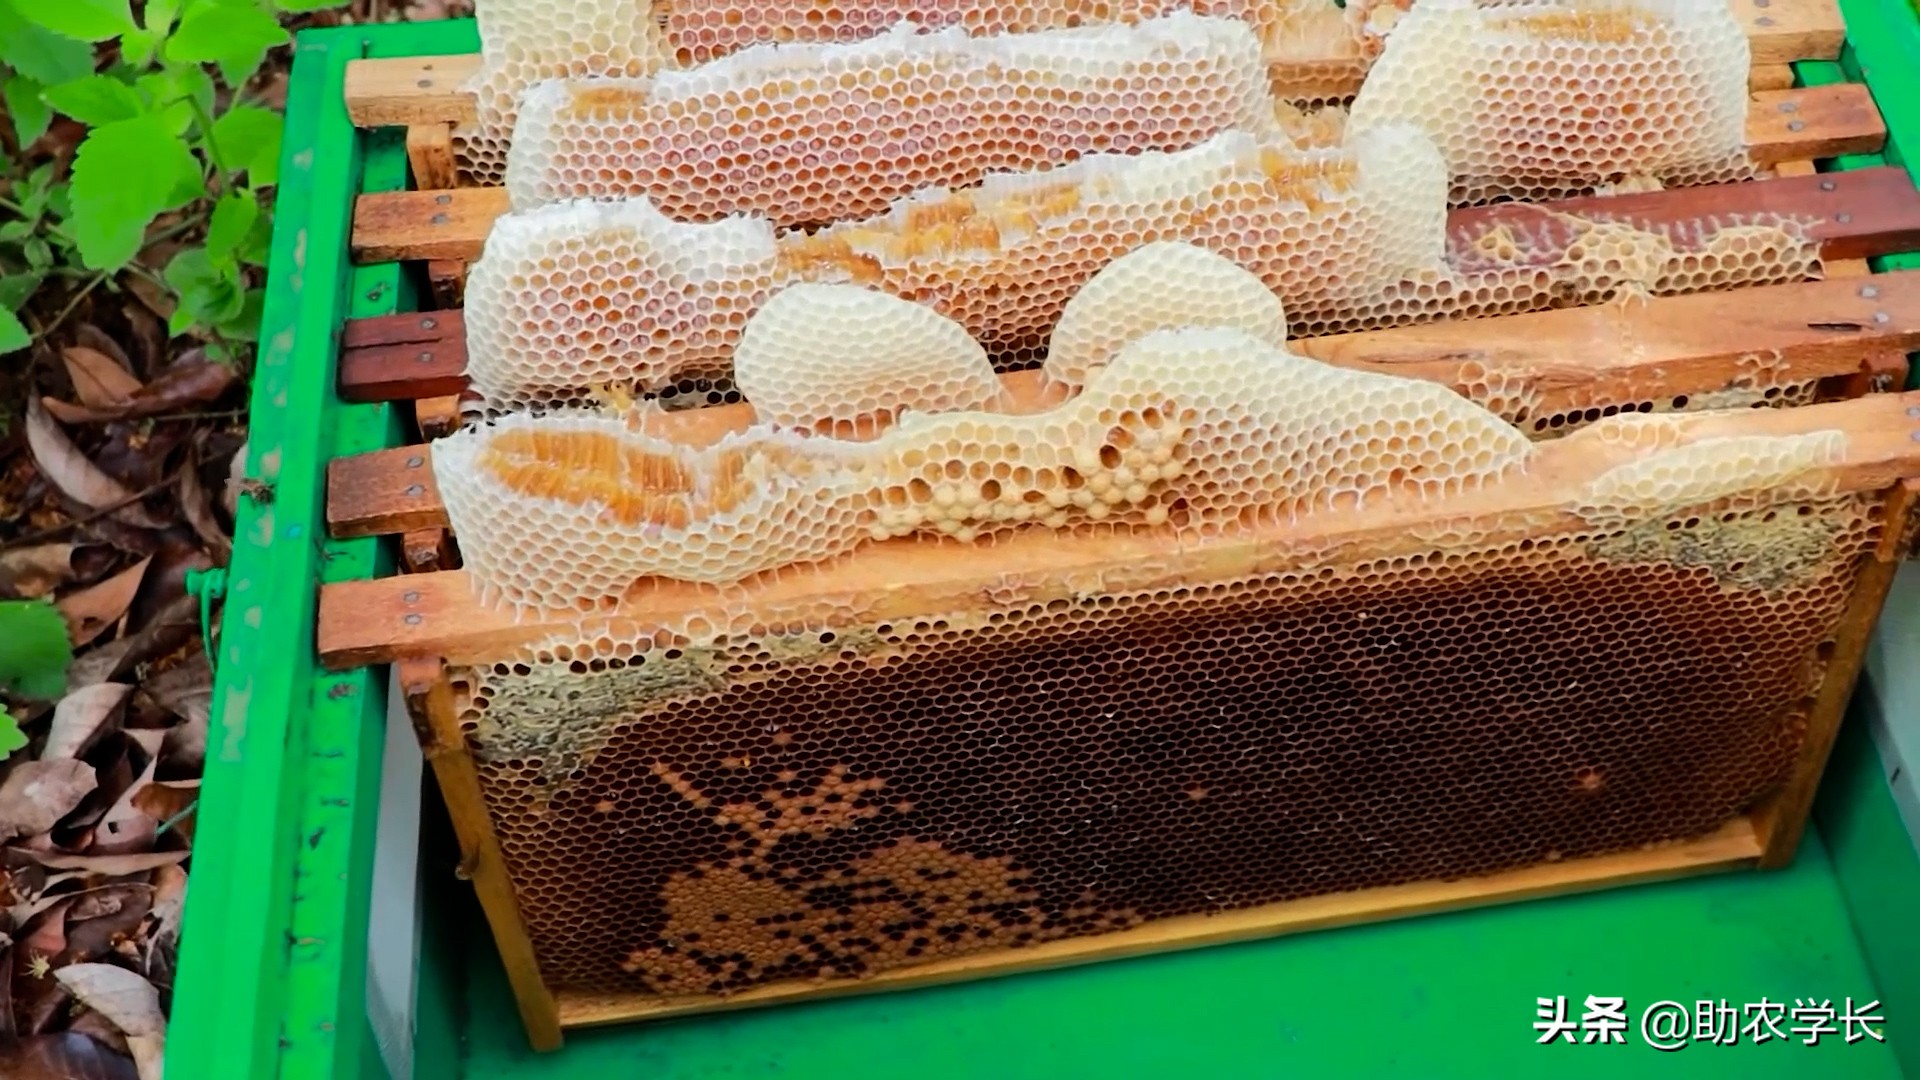 蜜蜂采蜜的过程 摇蜜机怎样摇蜂蜜-优刊号